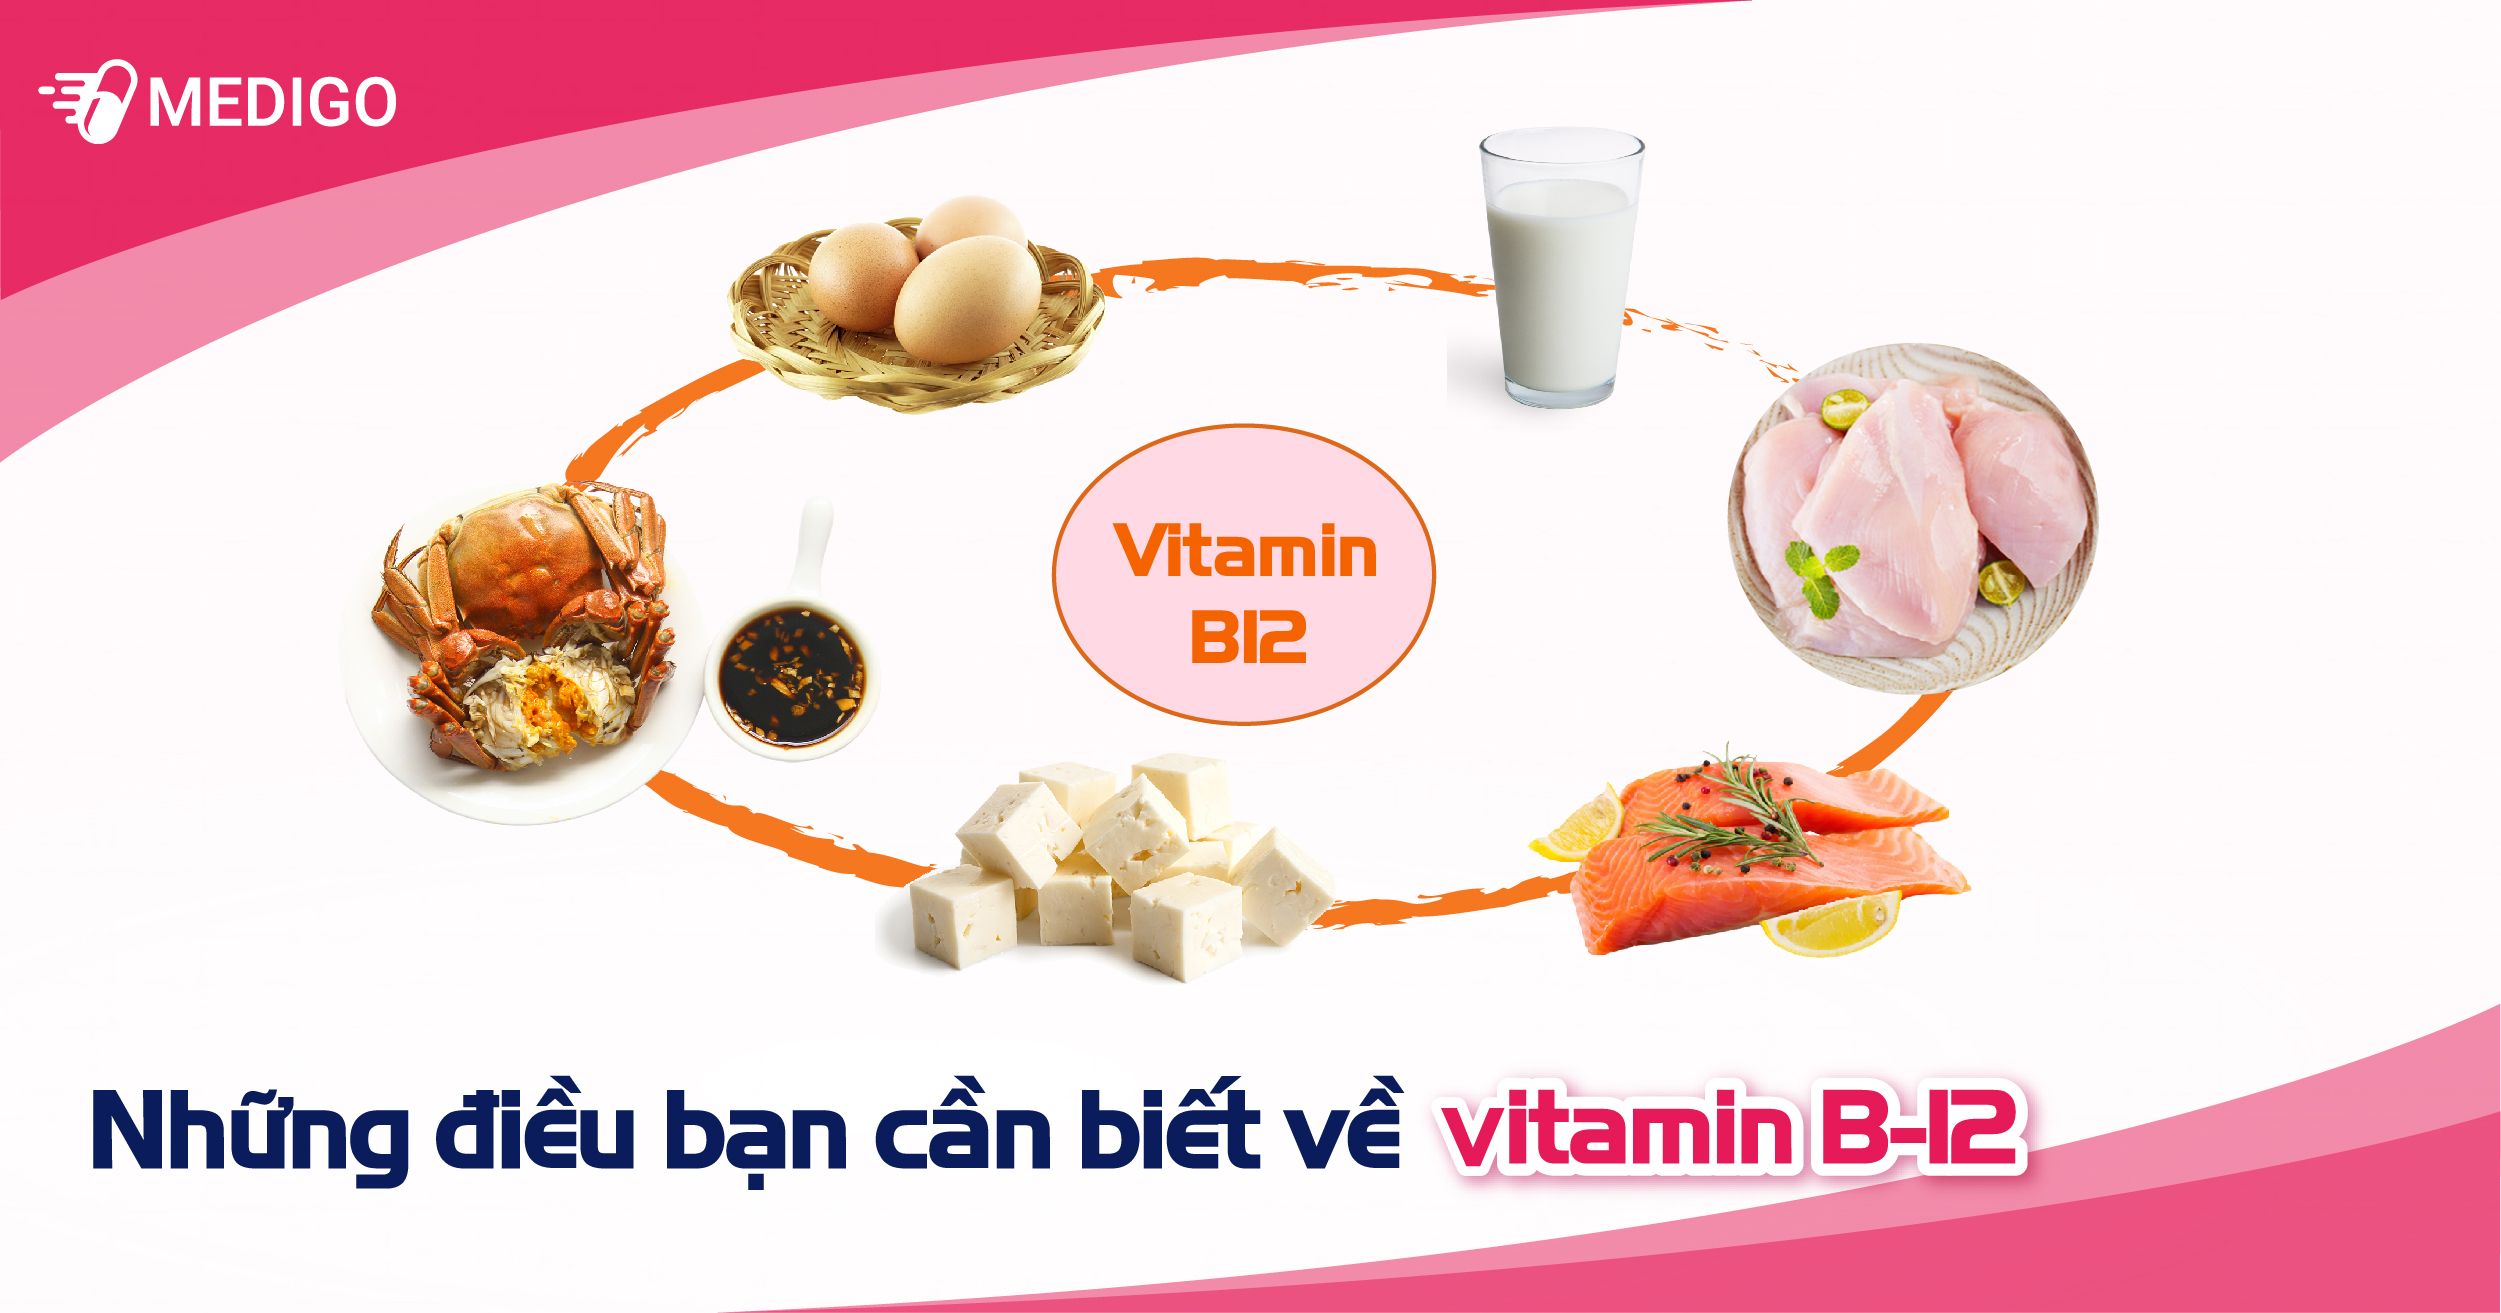 Vitamin B-12 và những điều bạn cần biết